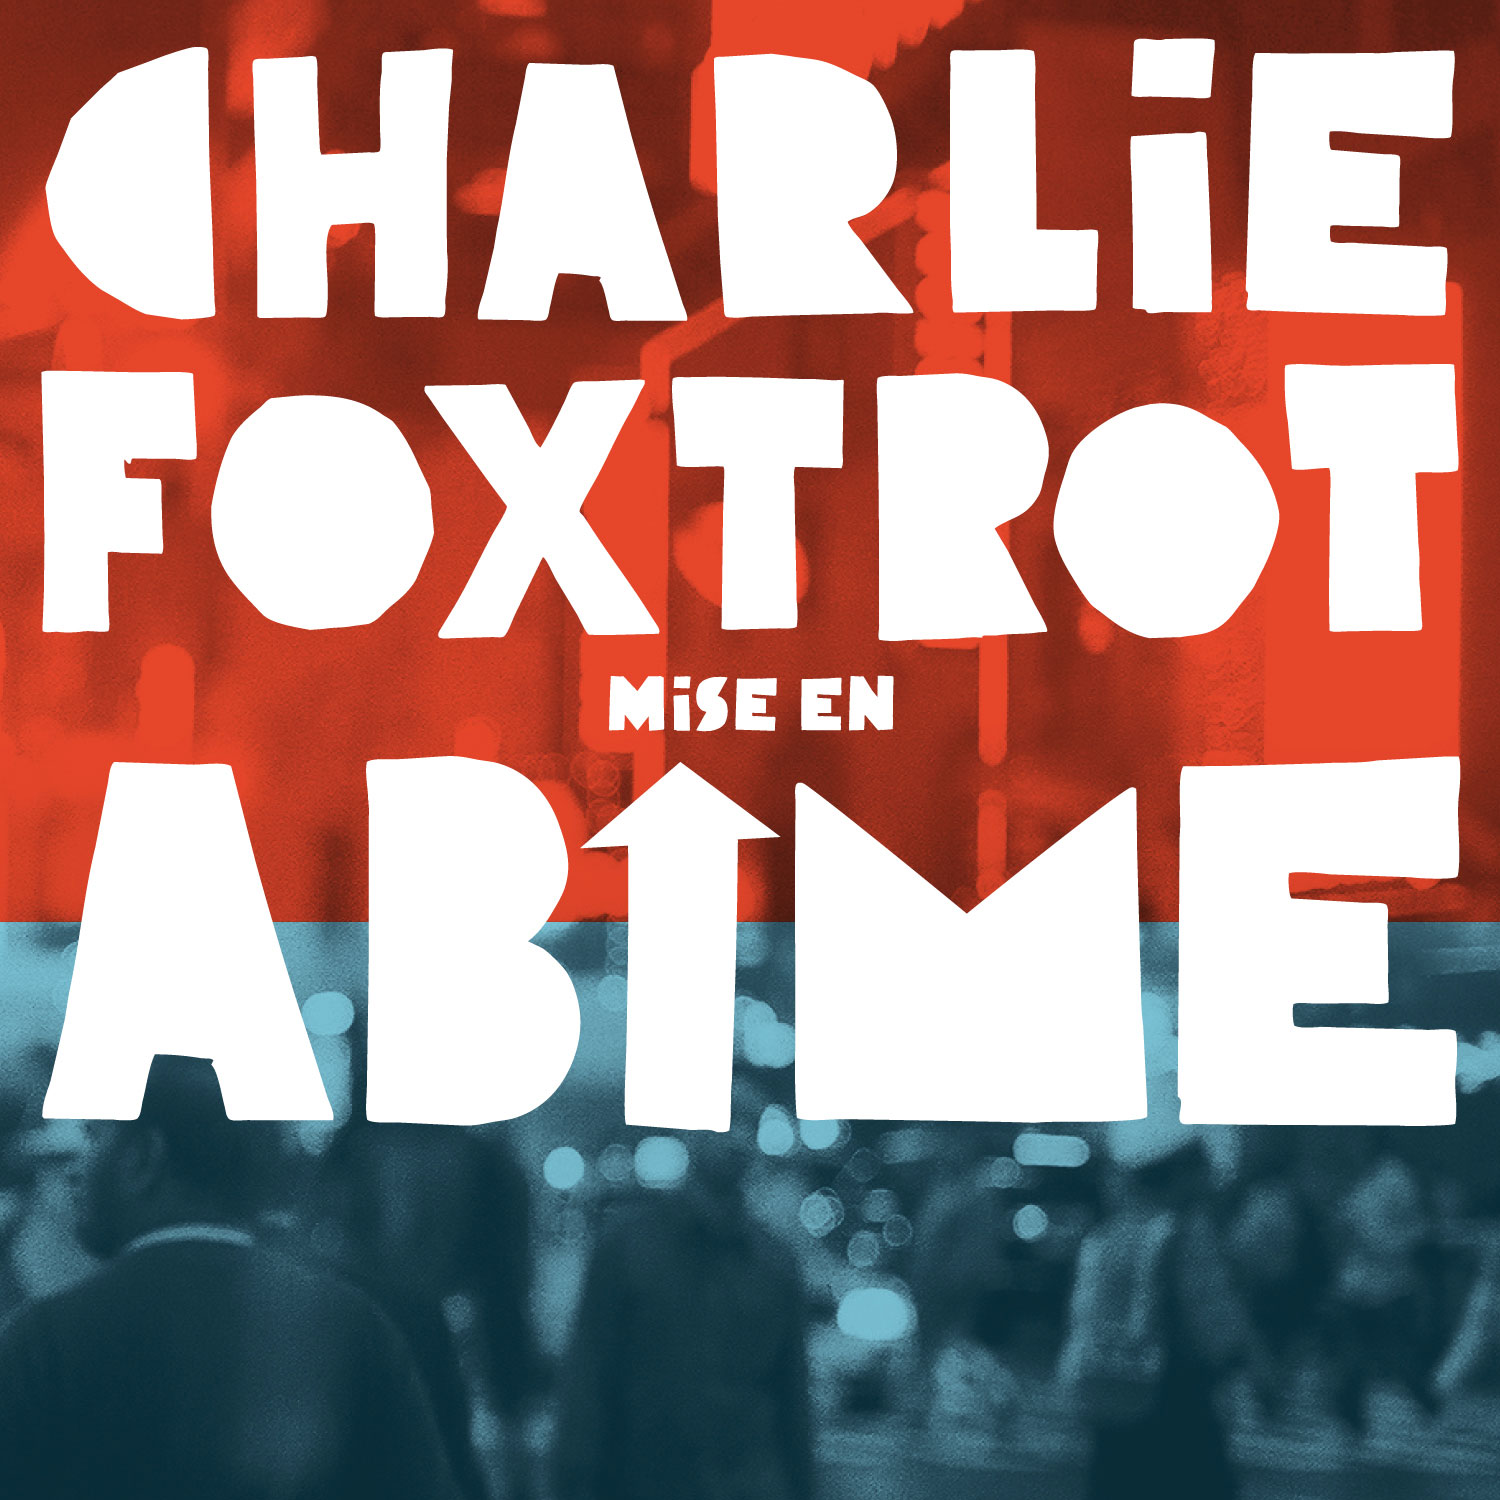 Charlie Foxtrot: Mise en abîme